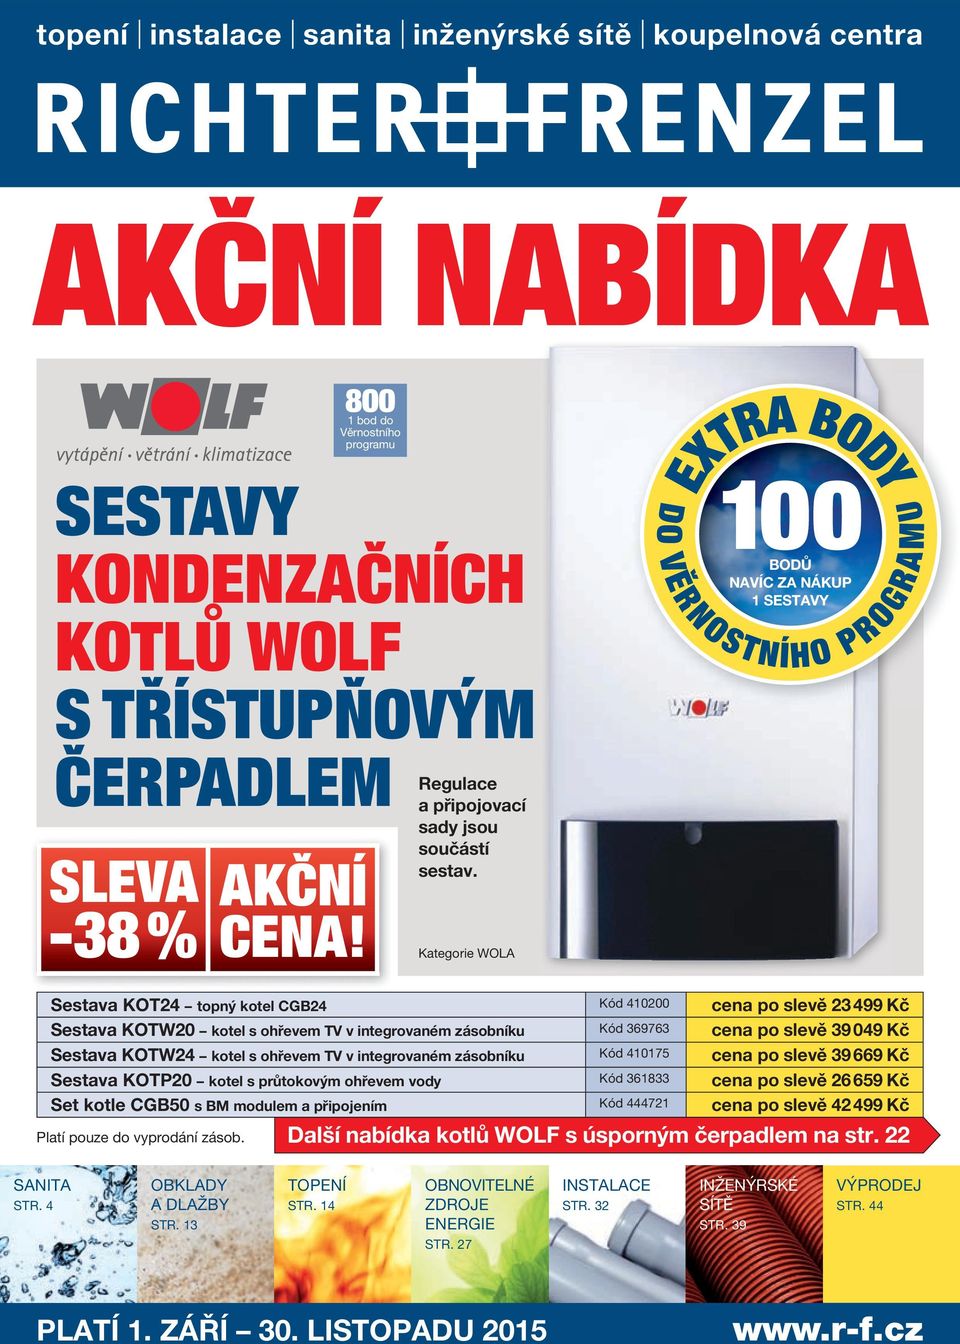 AKČNÍ NABÍDKA 800 SESTAVY KONDENZAČNÍCH KOTLŮ WOLF S TŘÍSTUPŇOVÝM ČERPADLEM  -38 % AKČNÍ SLEVA CENA! - PDF Free Download